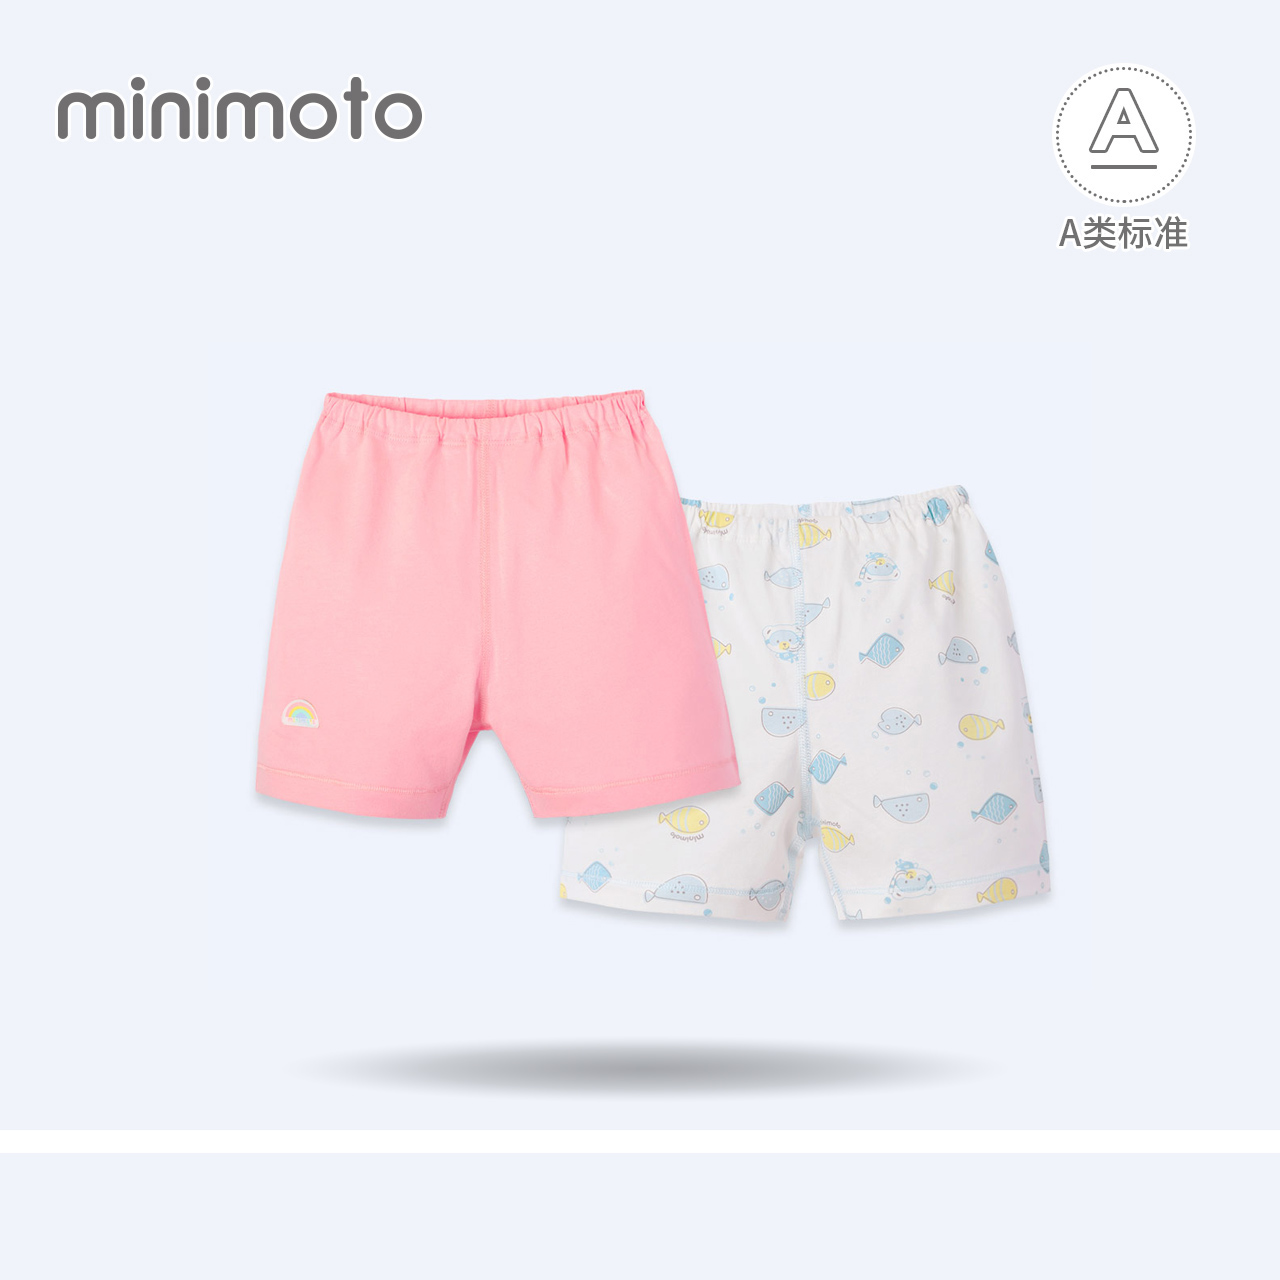 小米米minimoto夏季婴儿纯棉短裤透气男女宝宝松紧带家居打底睡裤